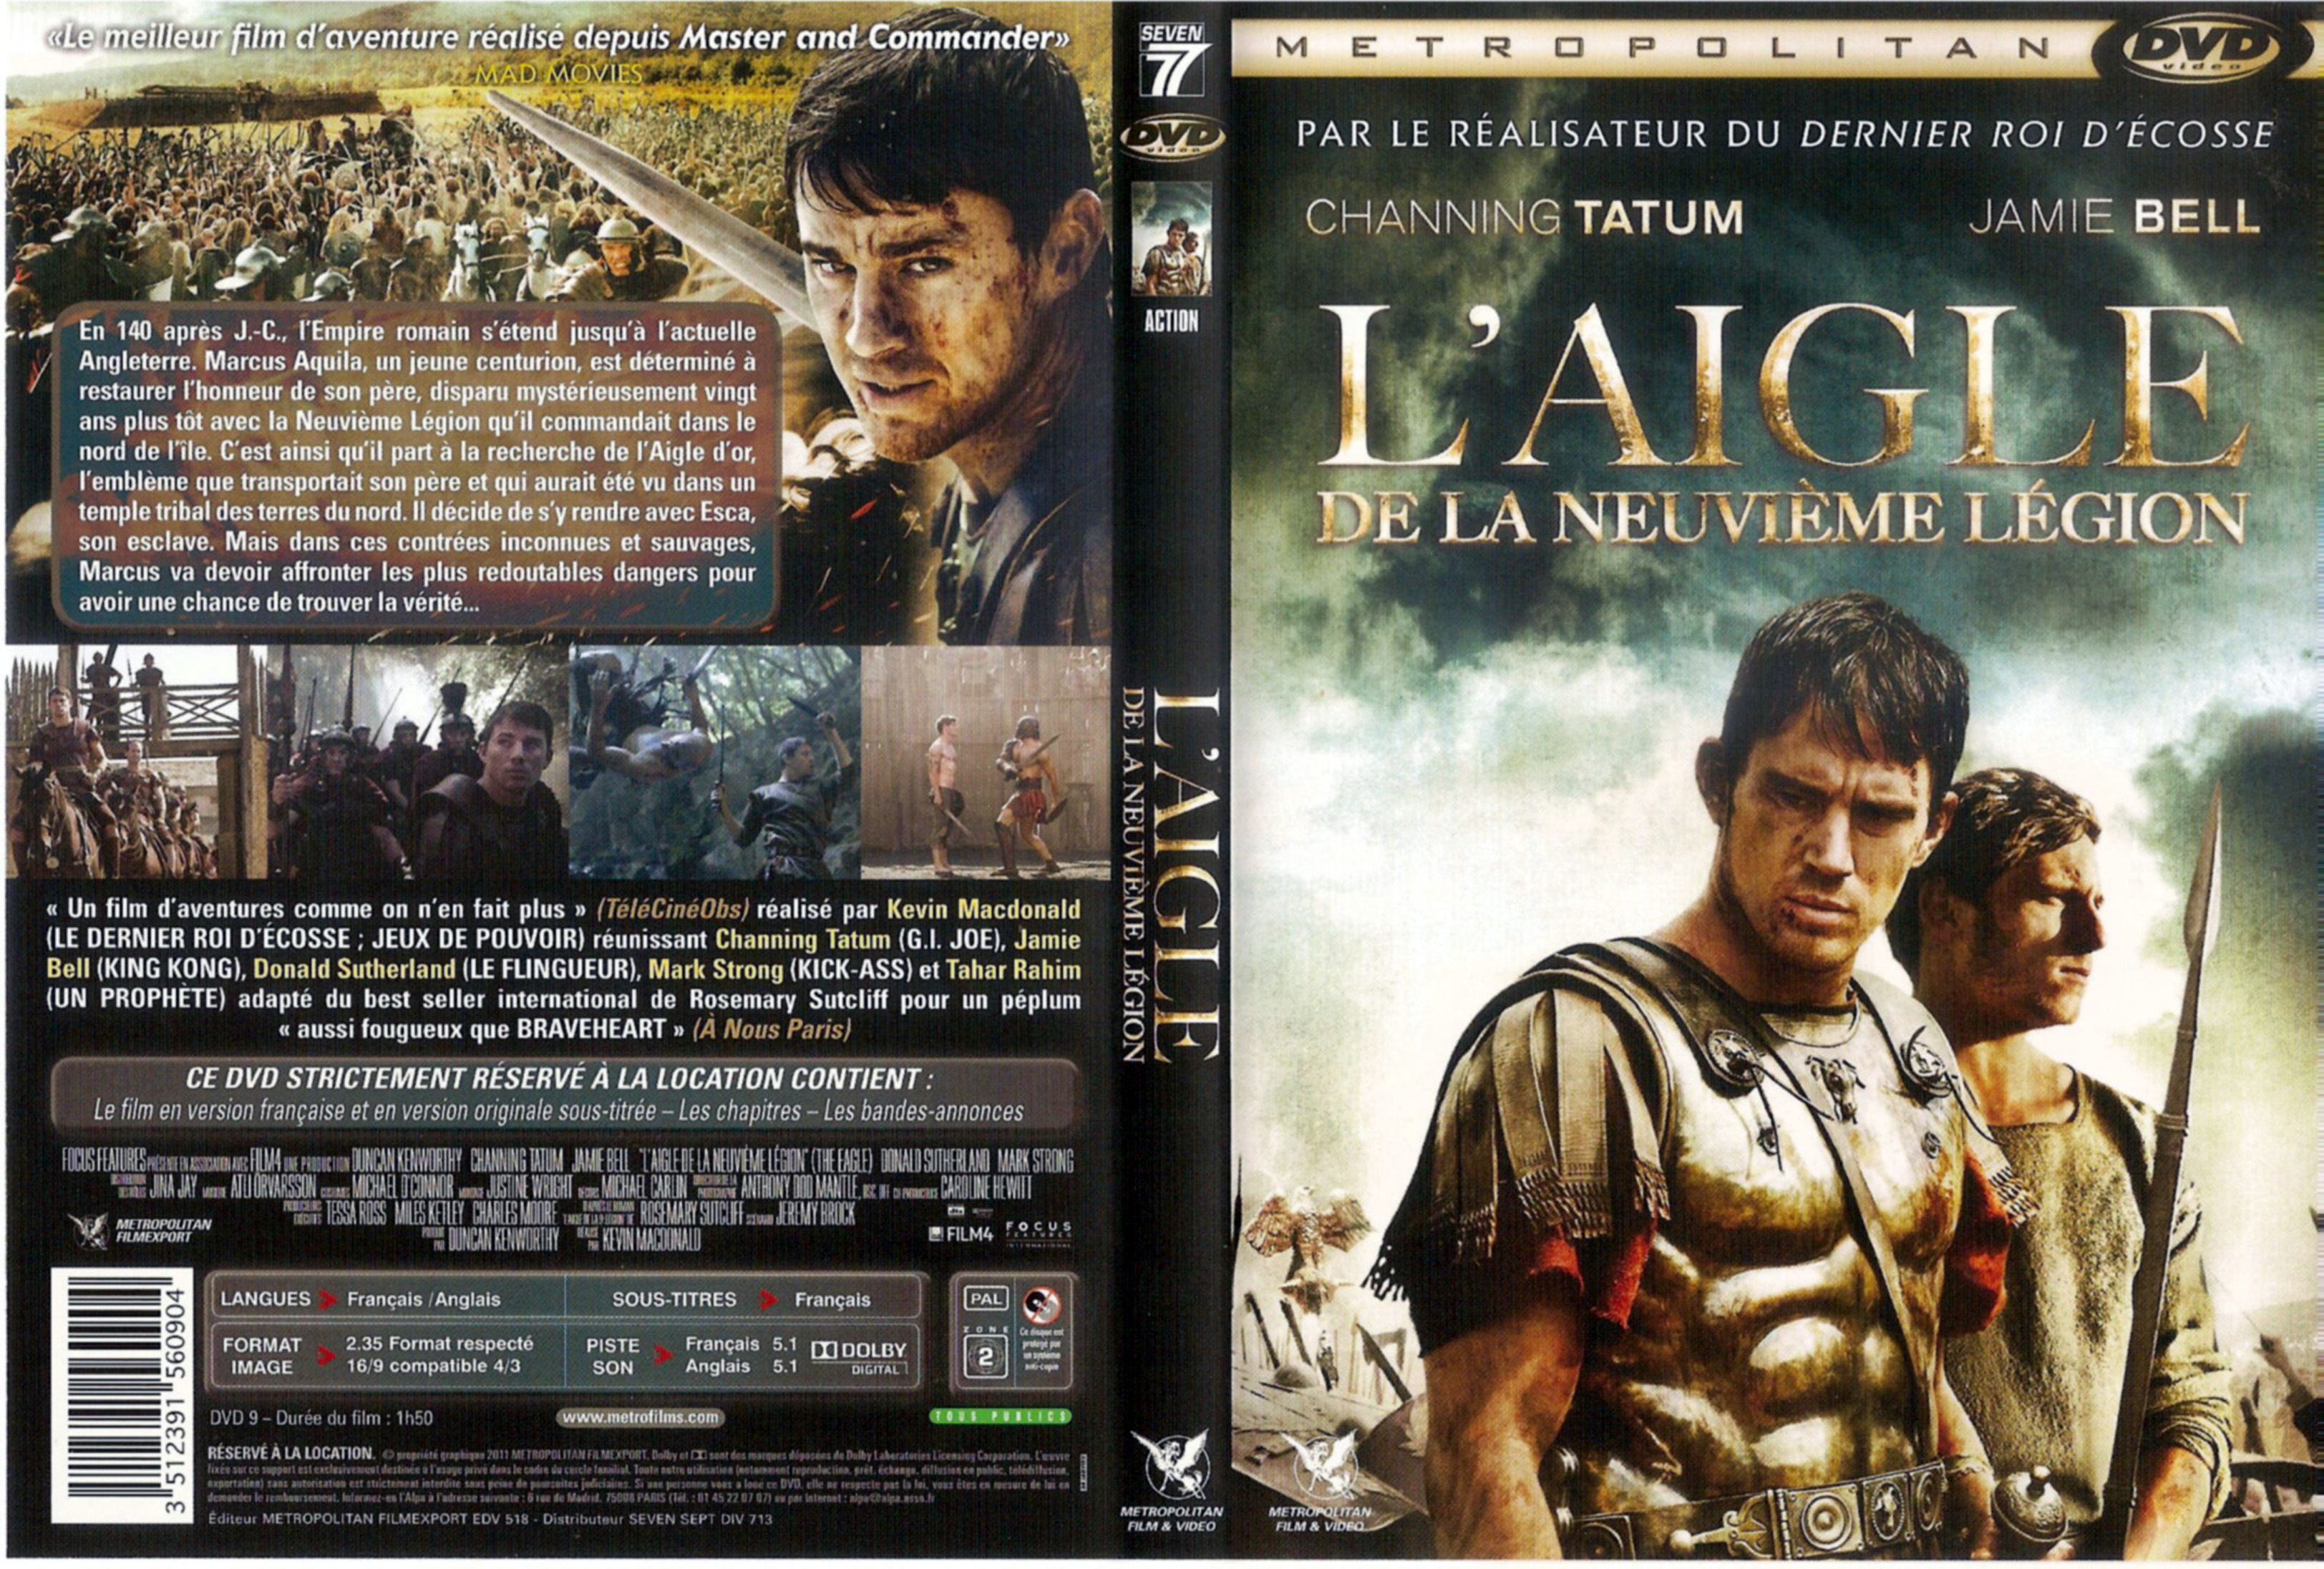 Jaquette DVD de L'aigle de la neuvième légion - Passion